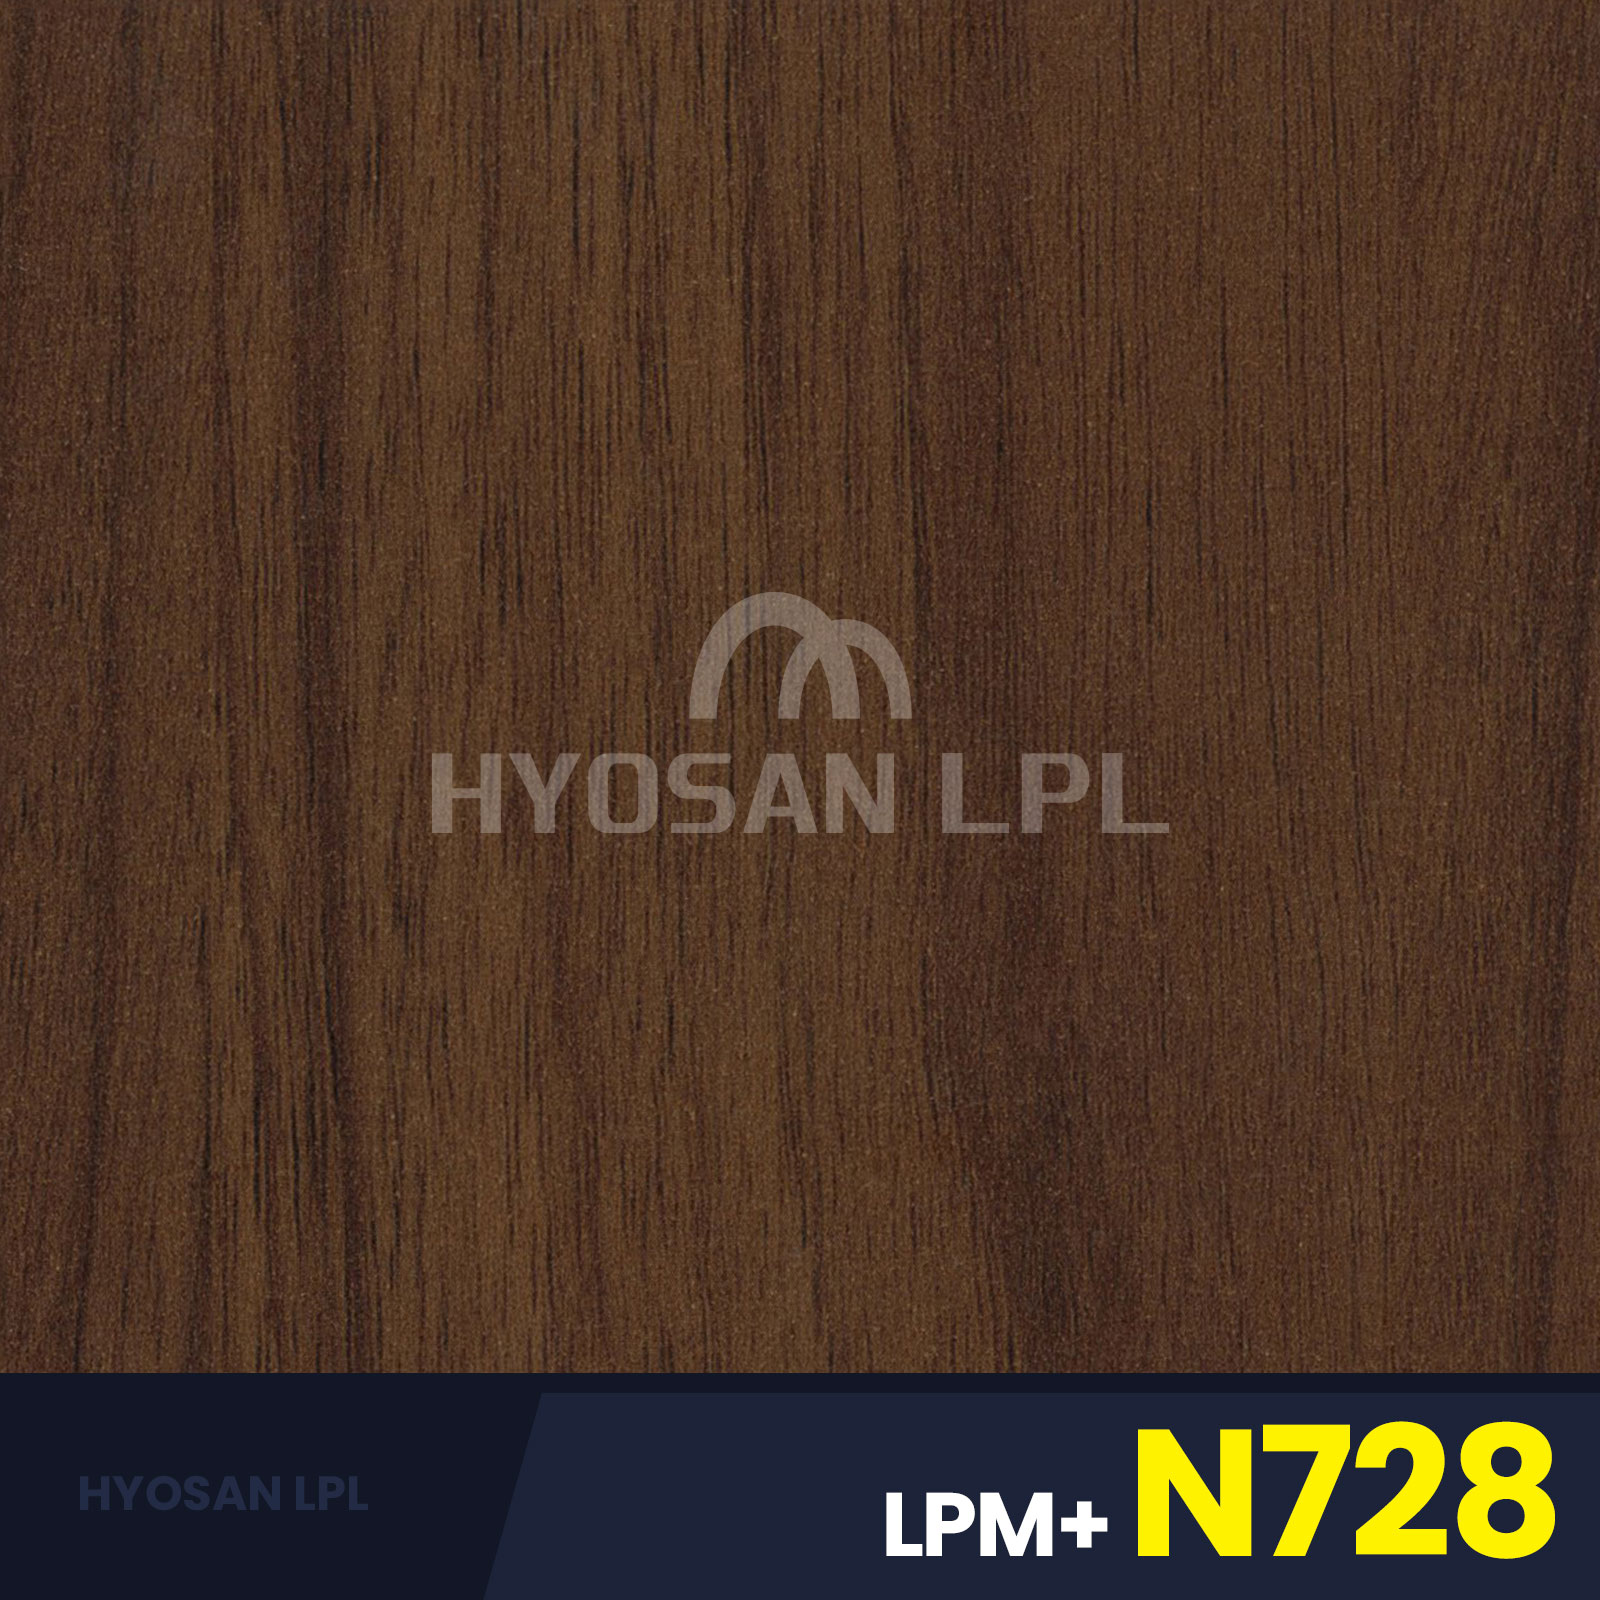 LPM+N728